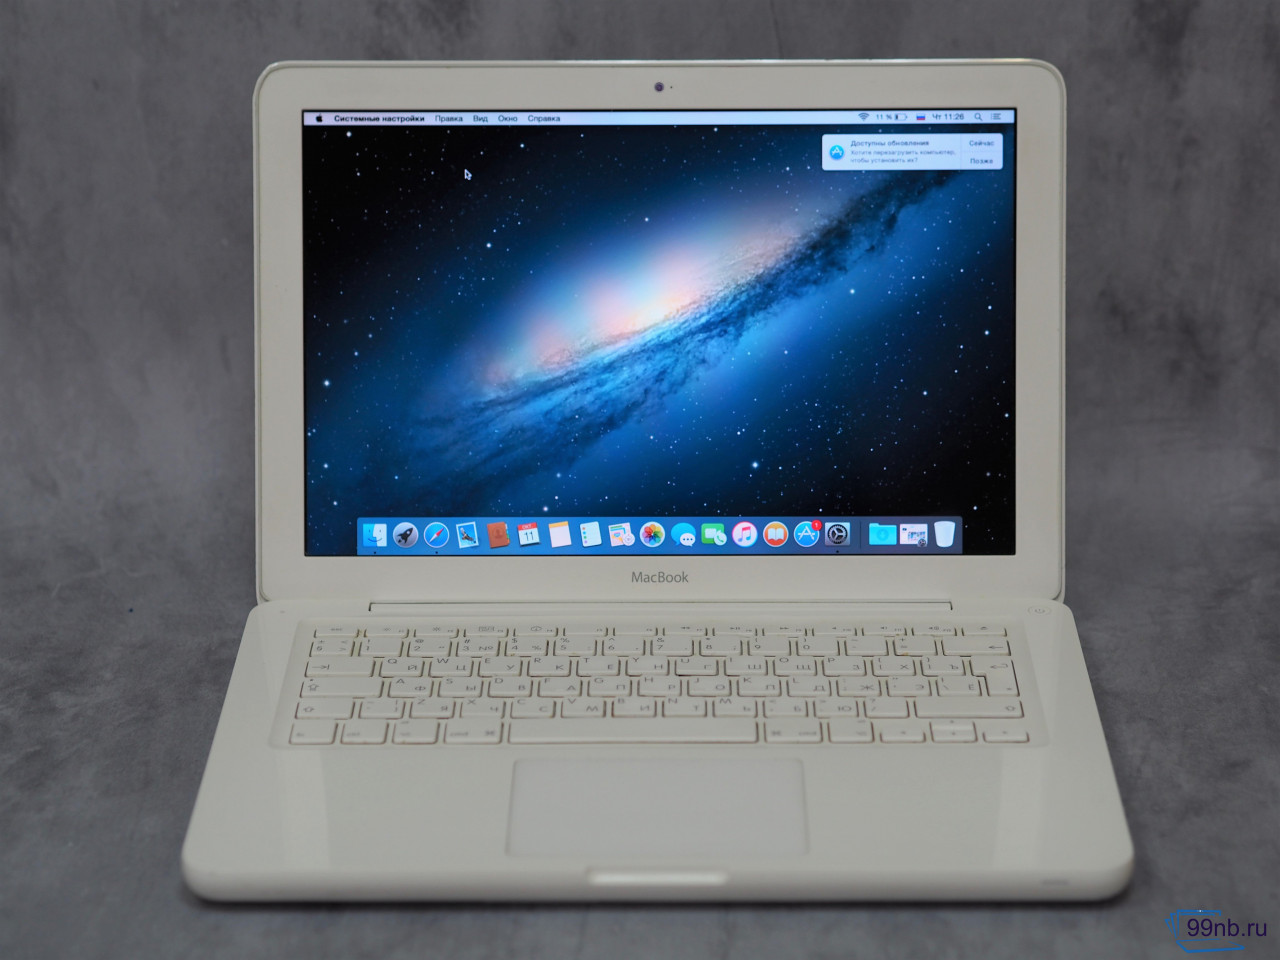 Macbook A1342